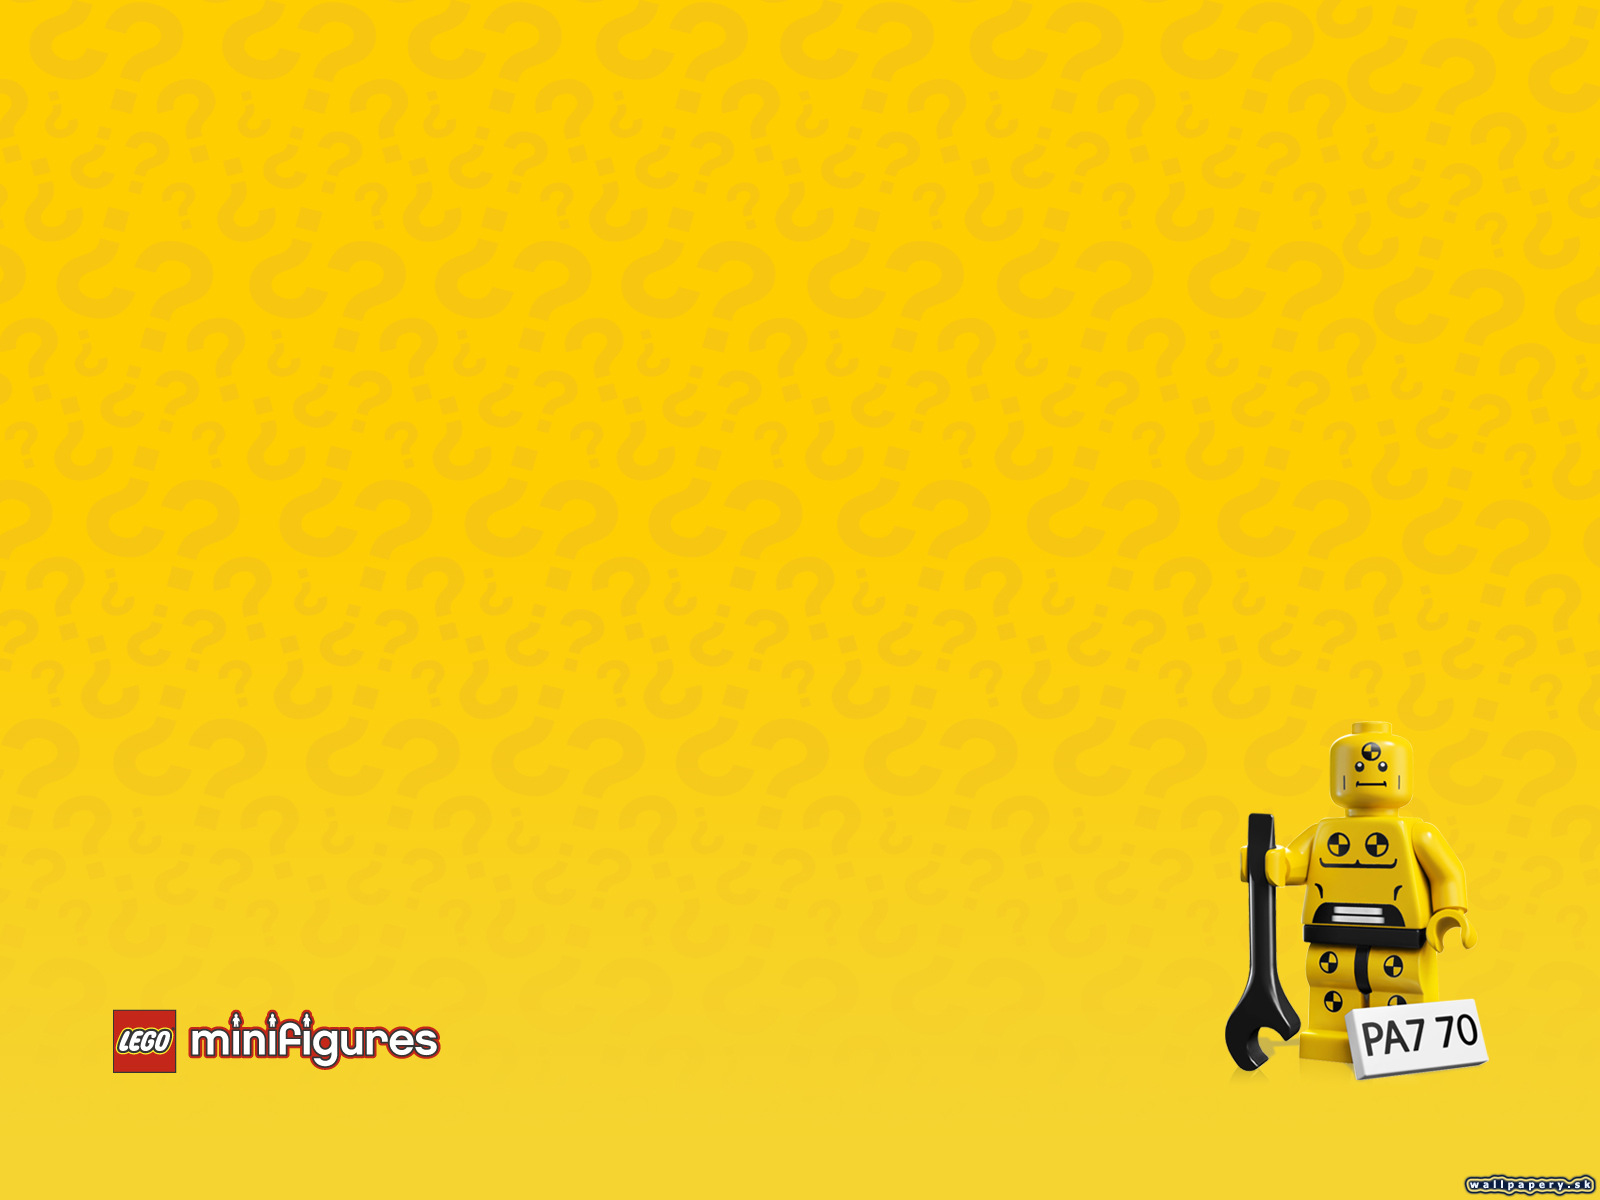 LEGO Minifigures Online - wallpaper 19